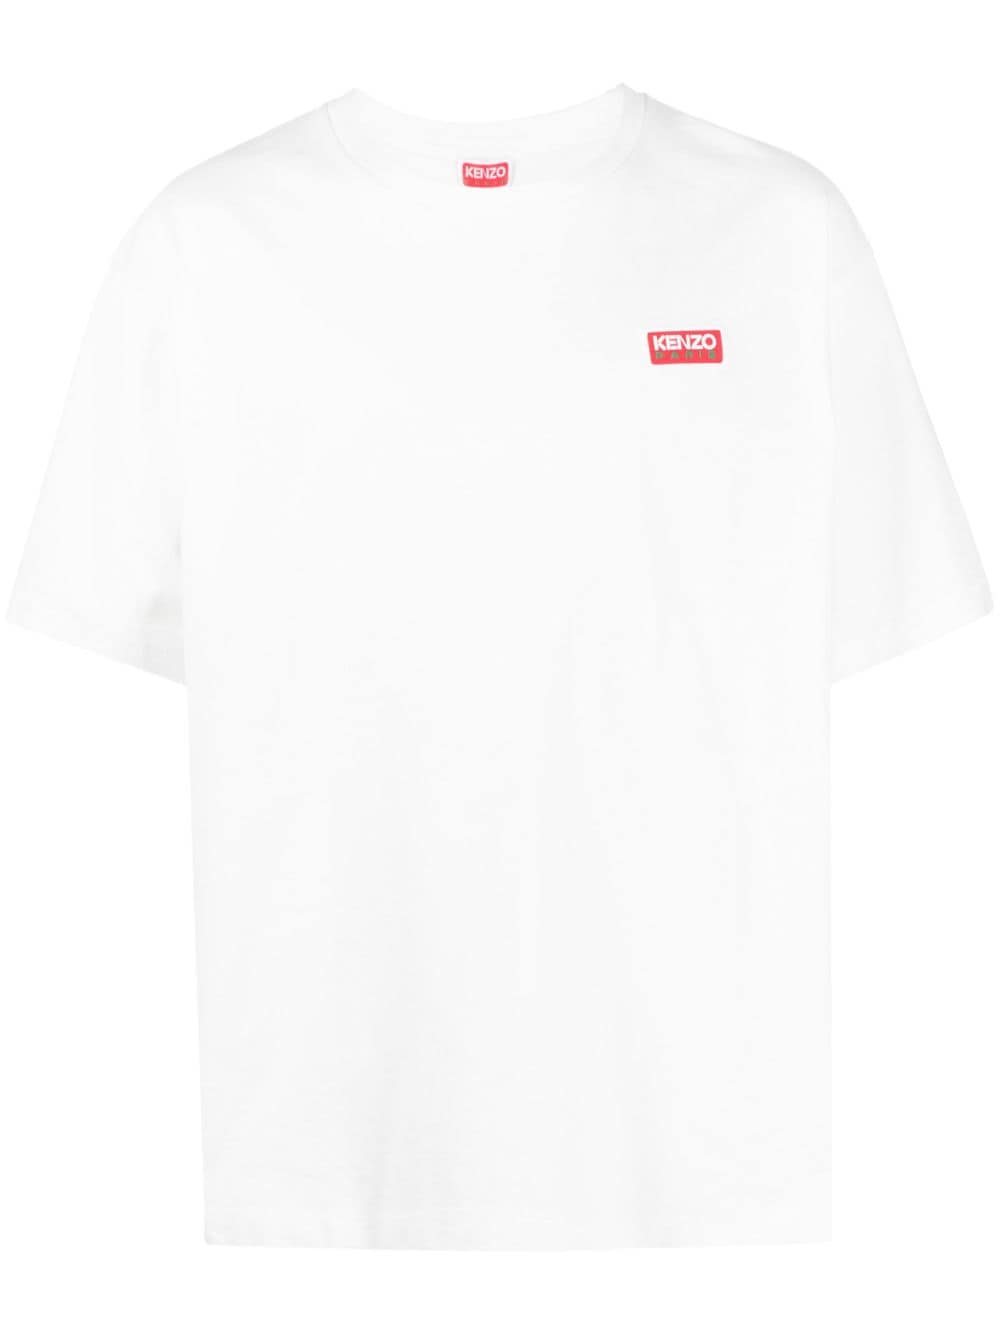 Kenzo T-shirt White imprimé Kenzo Paris - Lothaire